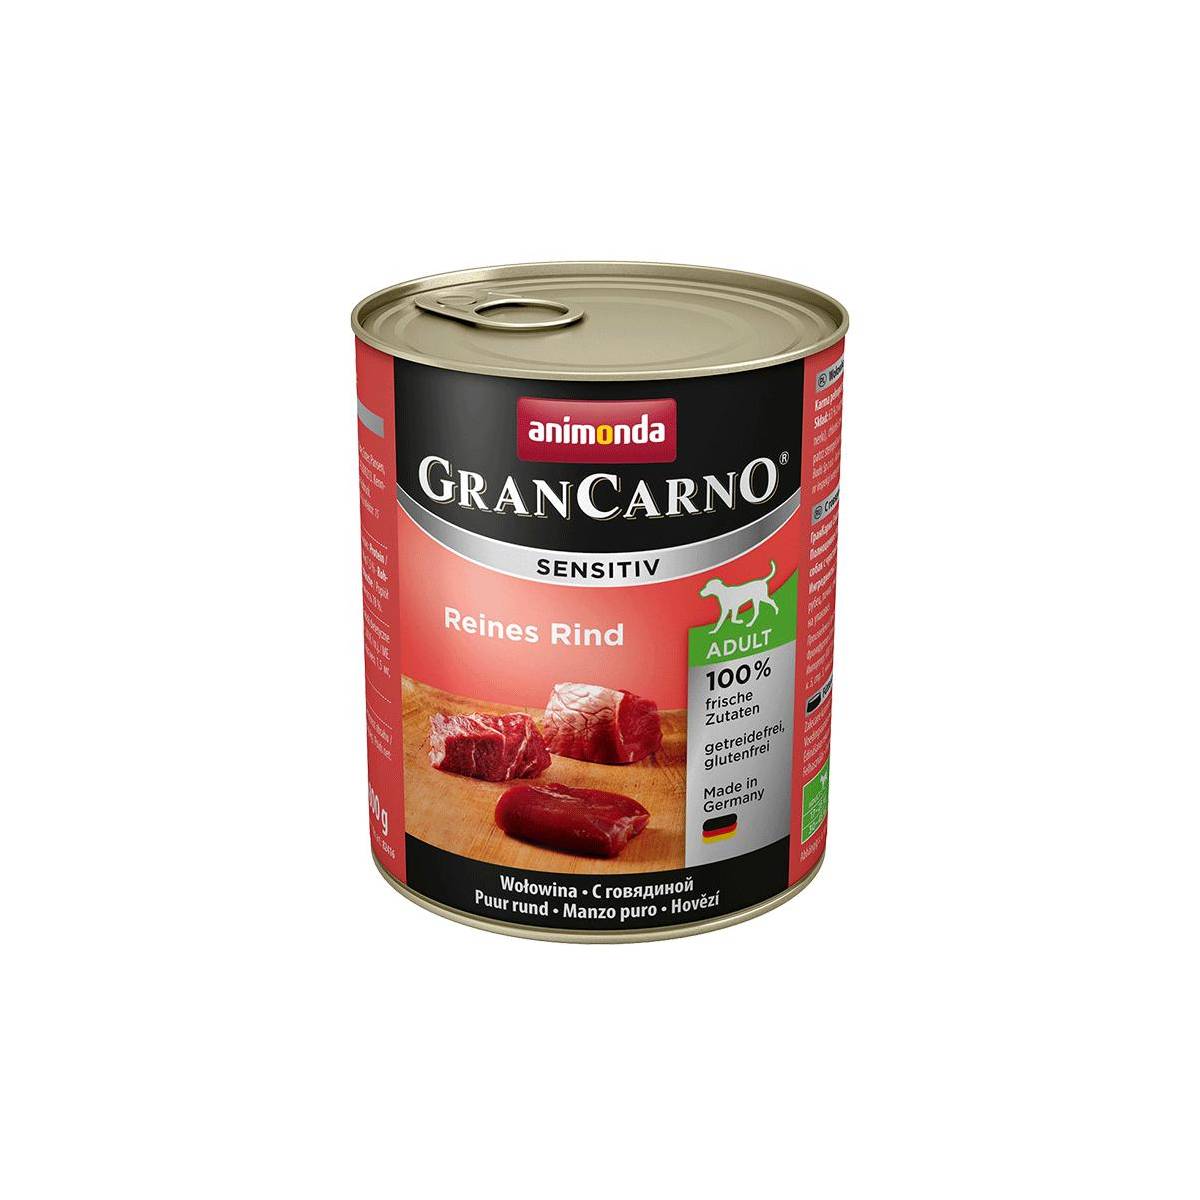 Animonda grancarno sensitive adult puszki czysta wołowina 800 g - wycofane